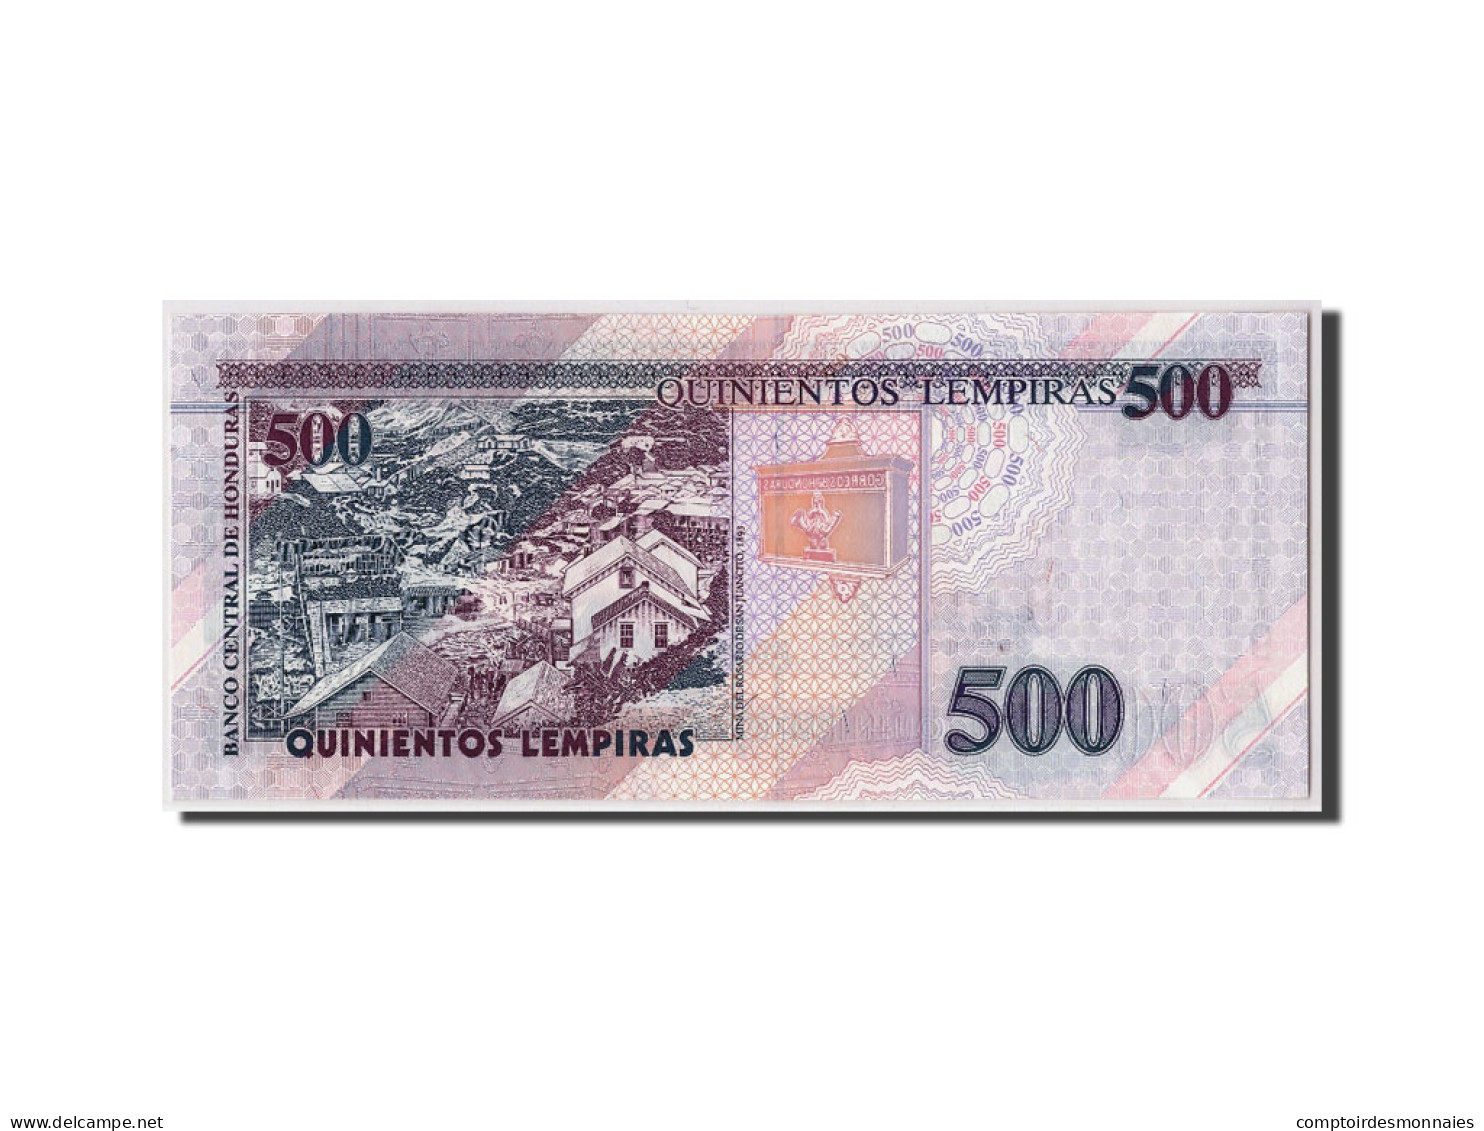 Billet, Honduras, 500 Lempiras, 2004, 2004-08-26, KM:78f, NEUF - Honduras